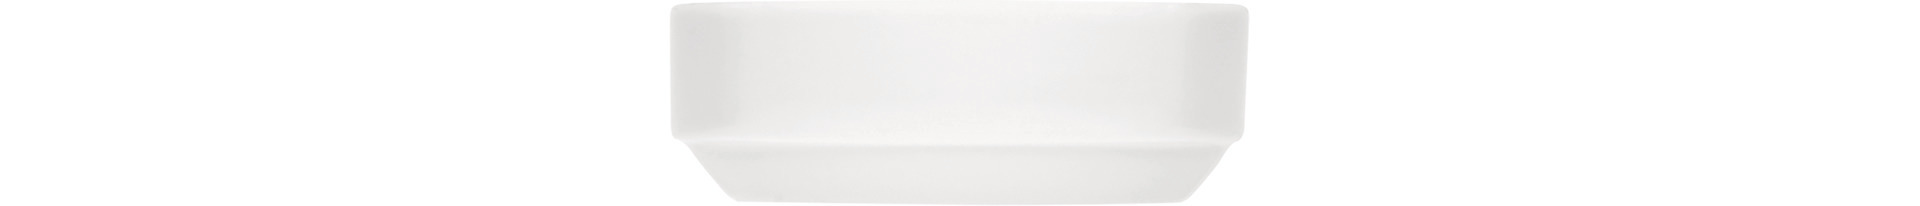 Schale viereckig stapelbar 127 x 127 mm / 0,36 l